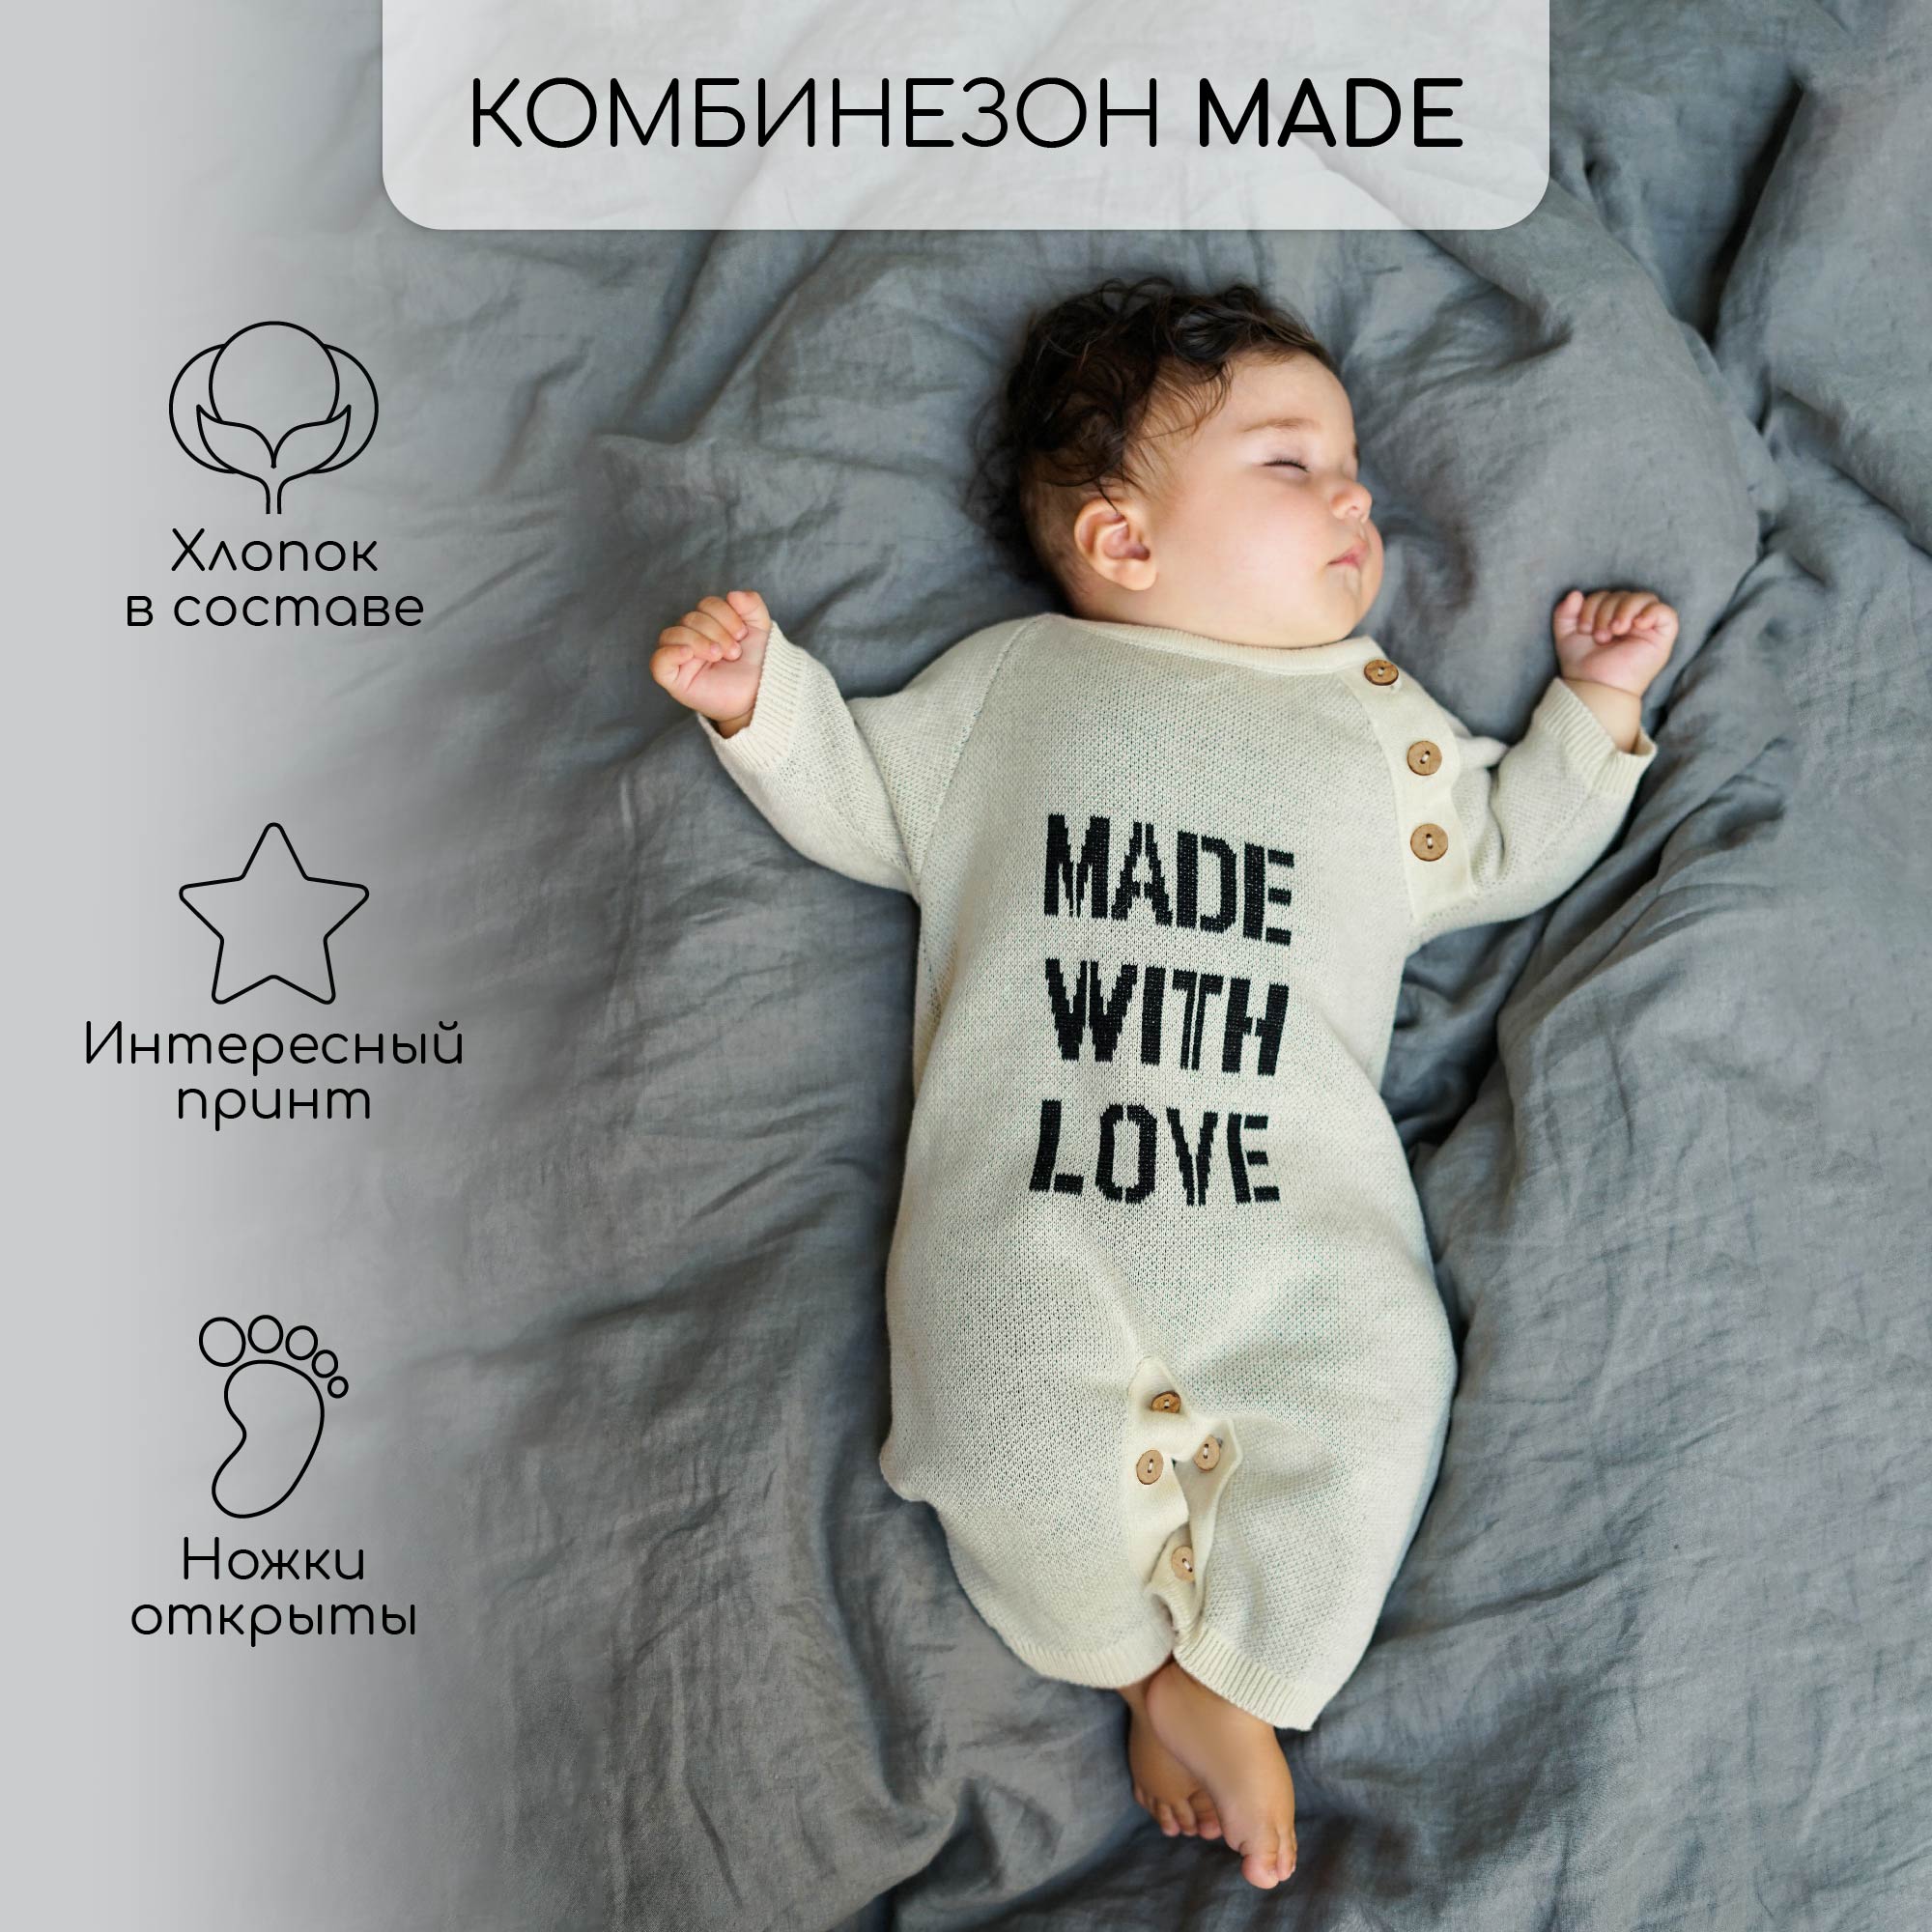 Комбинезон вязаный детский Pure Love Made, демисезонный, молочный, размер 86 вязаный детский плед nobodinoz so natural карамельный 65 x 65 см